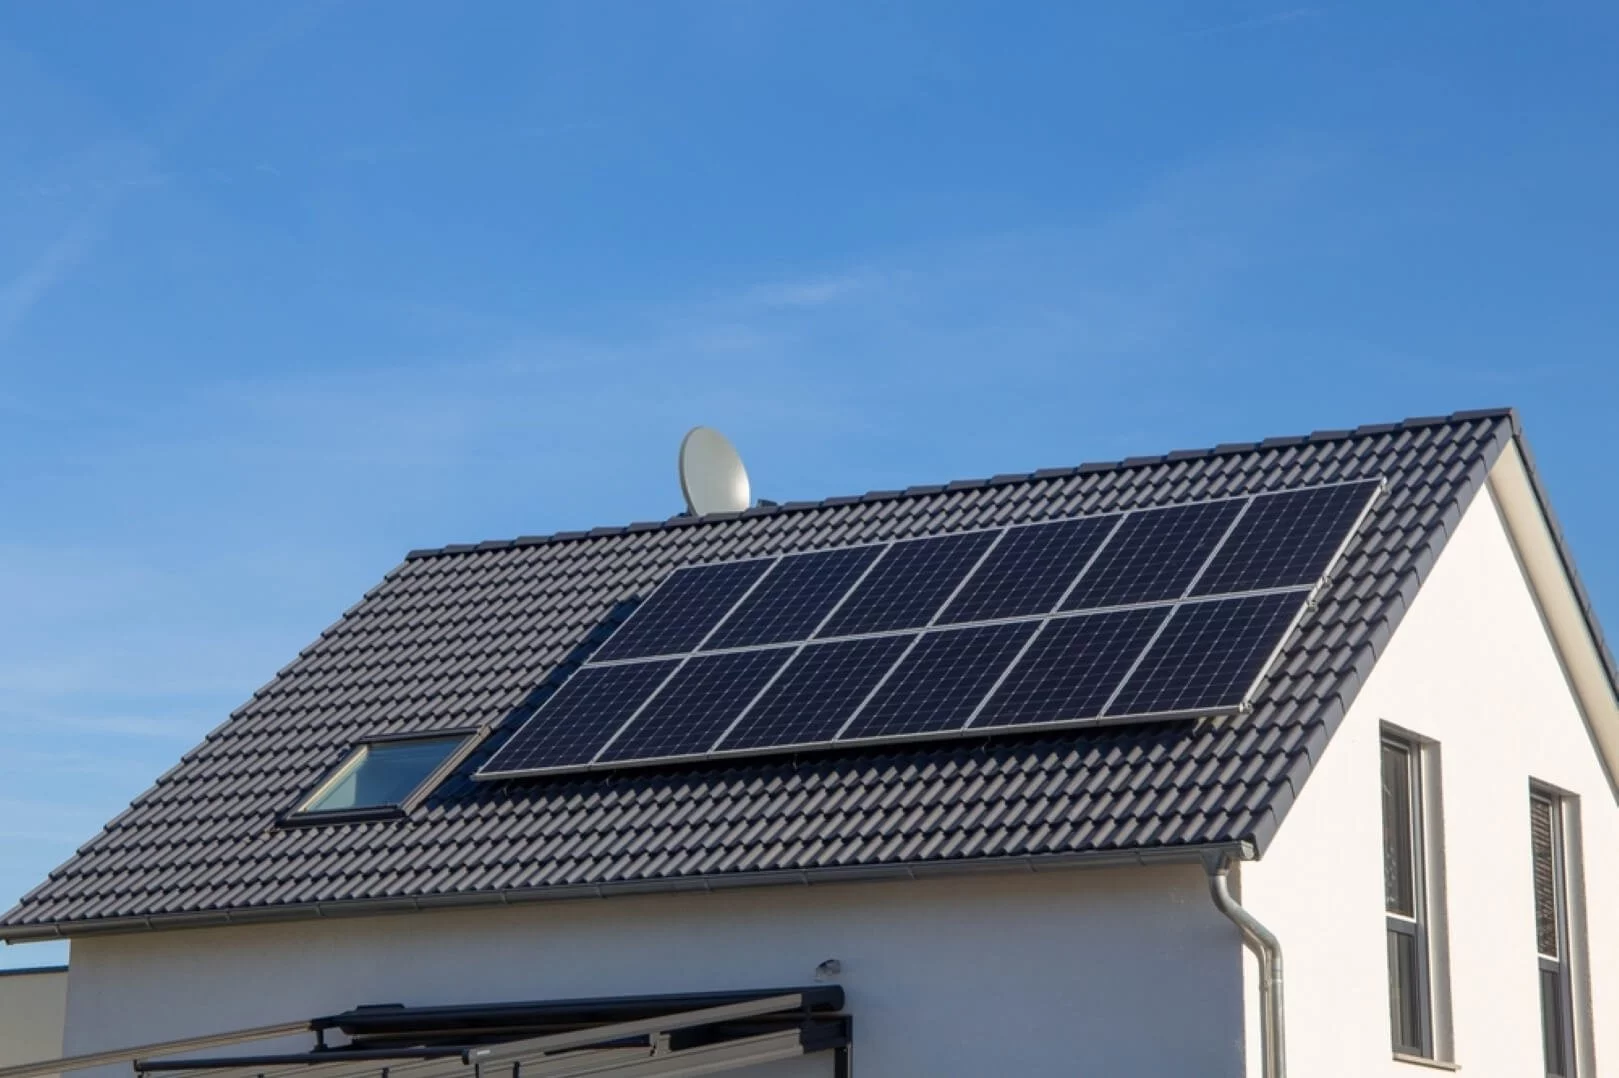 Entdecken Sie die Vorteile von Solarstrom mit Zerzi.de Photovoltaik